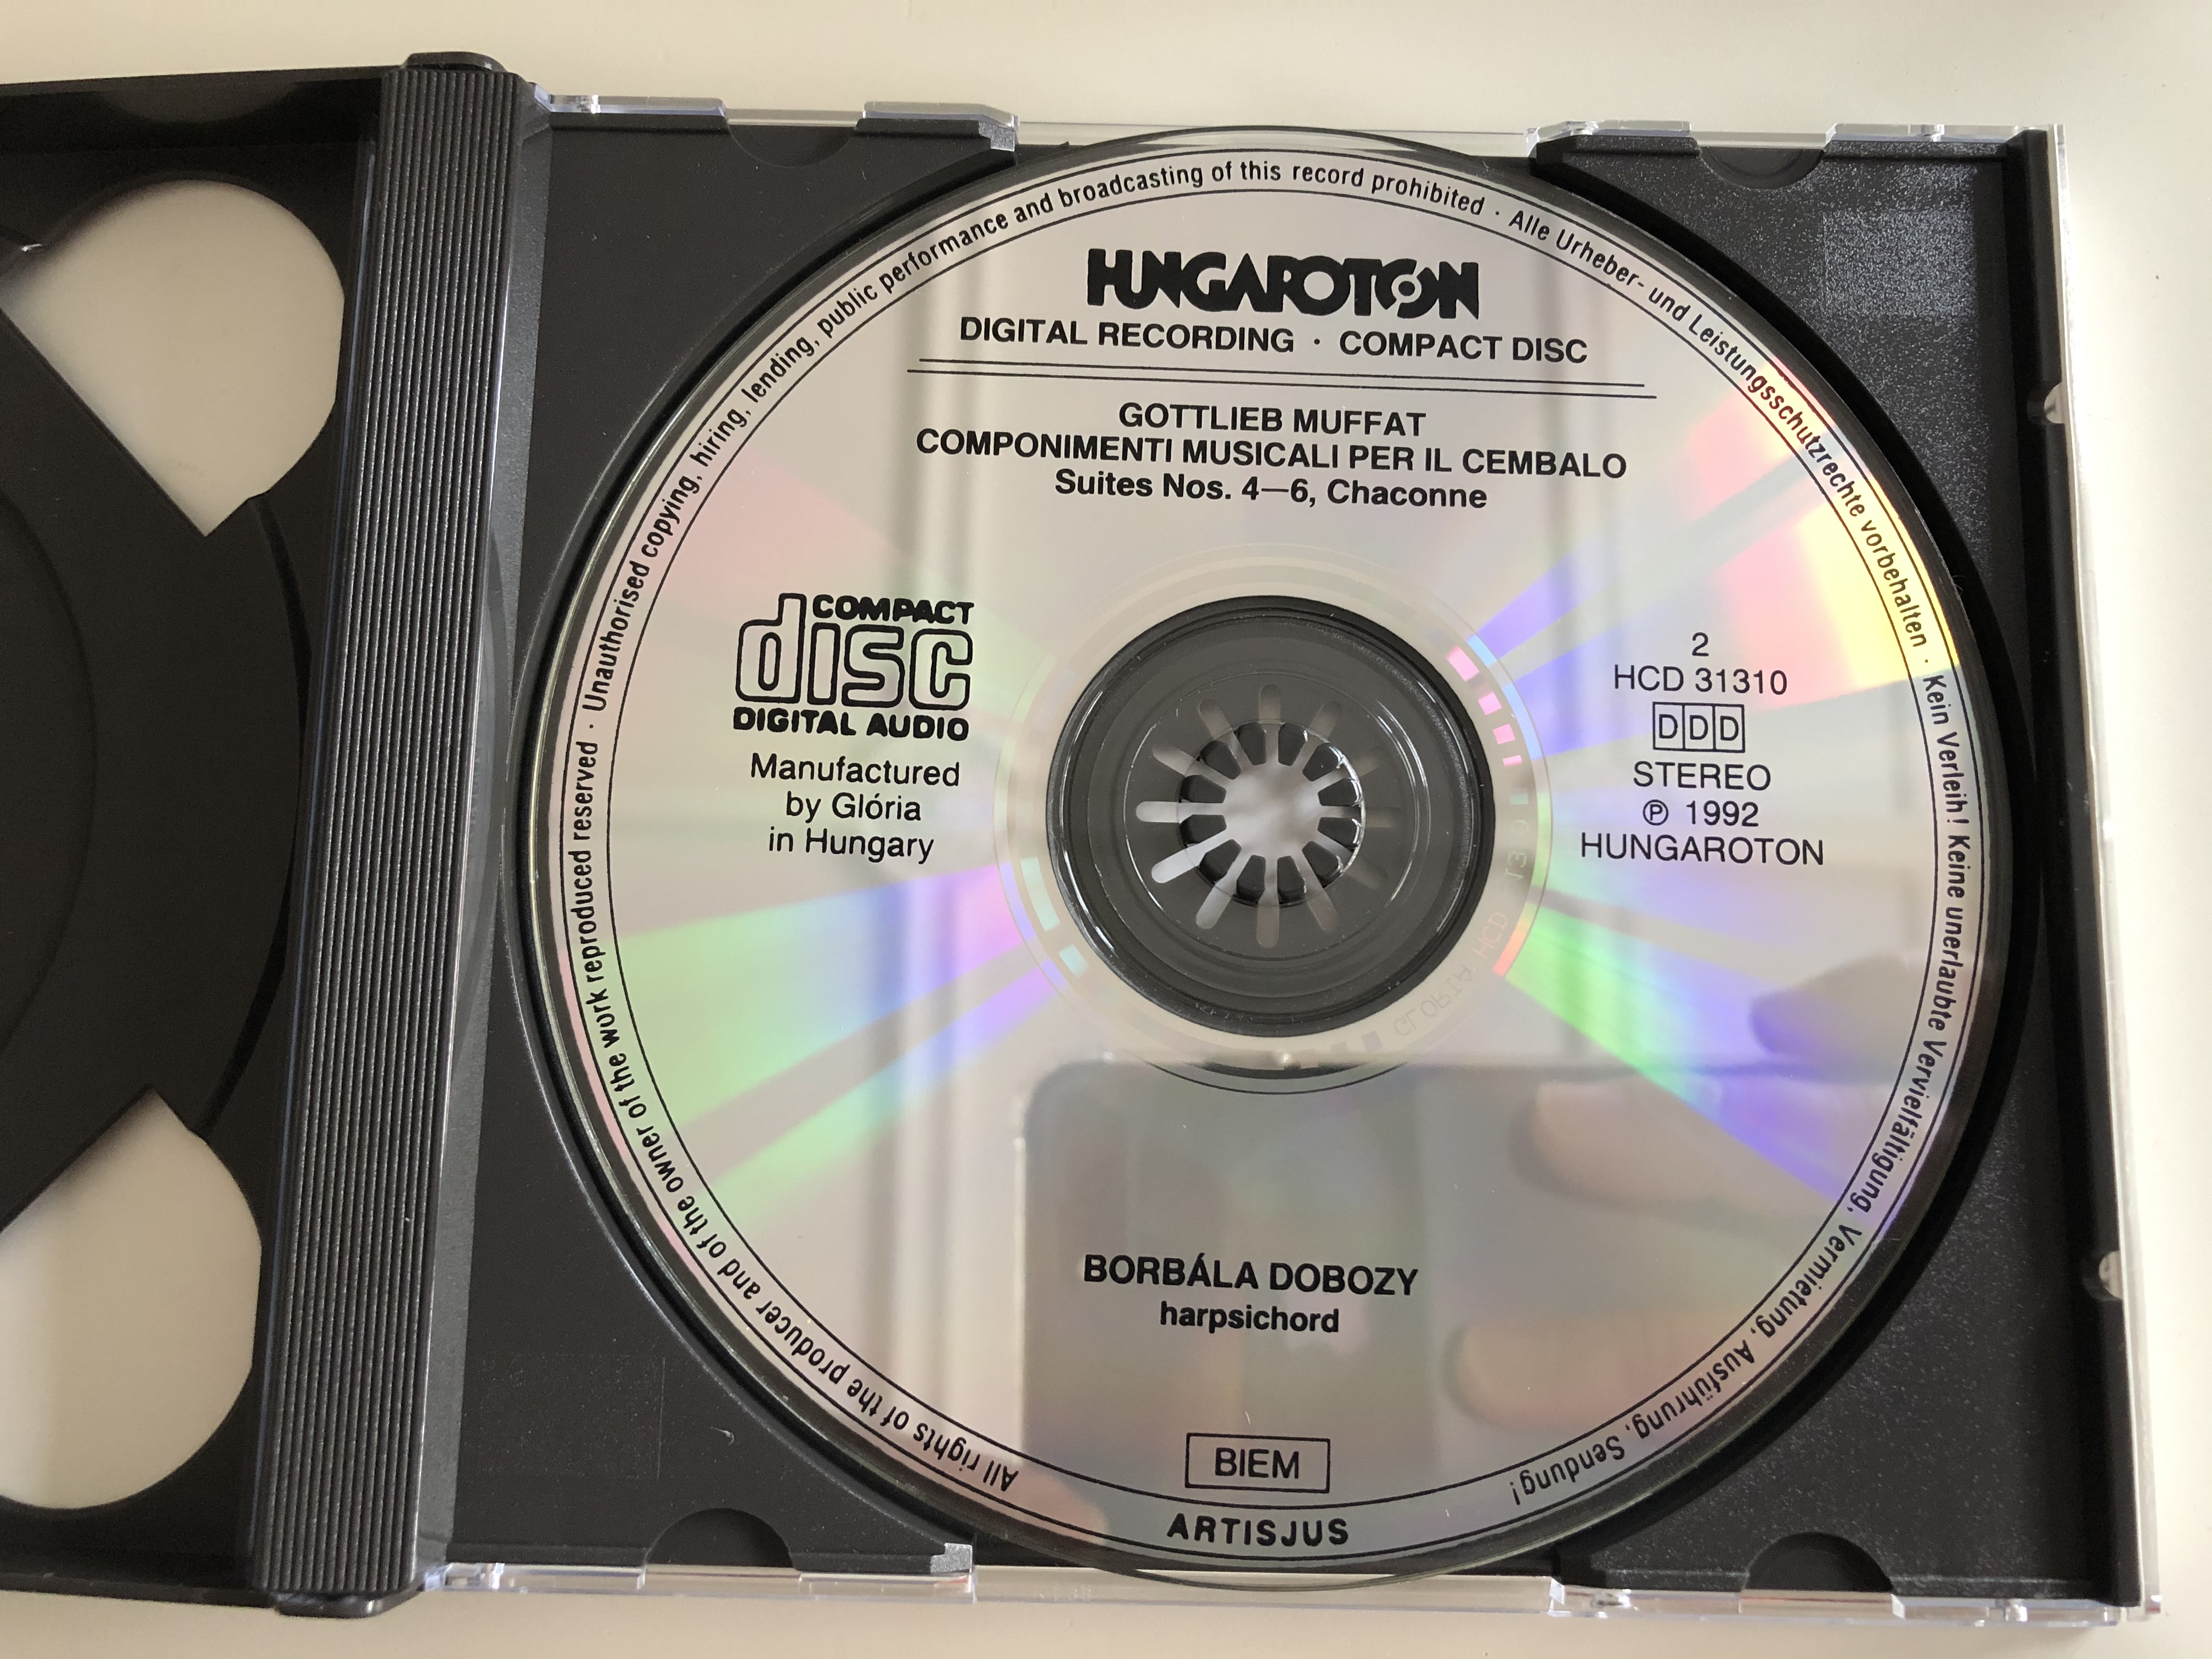 gottlieb-muffat-componimenti-musicali-per-il-cembalo-complete-borbala-dobozy-harpsichord-hungaroton-2x-audio-cd-1992-stereo-hcd-31309-10-10-.jpg